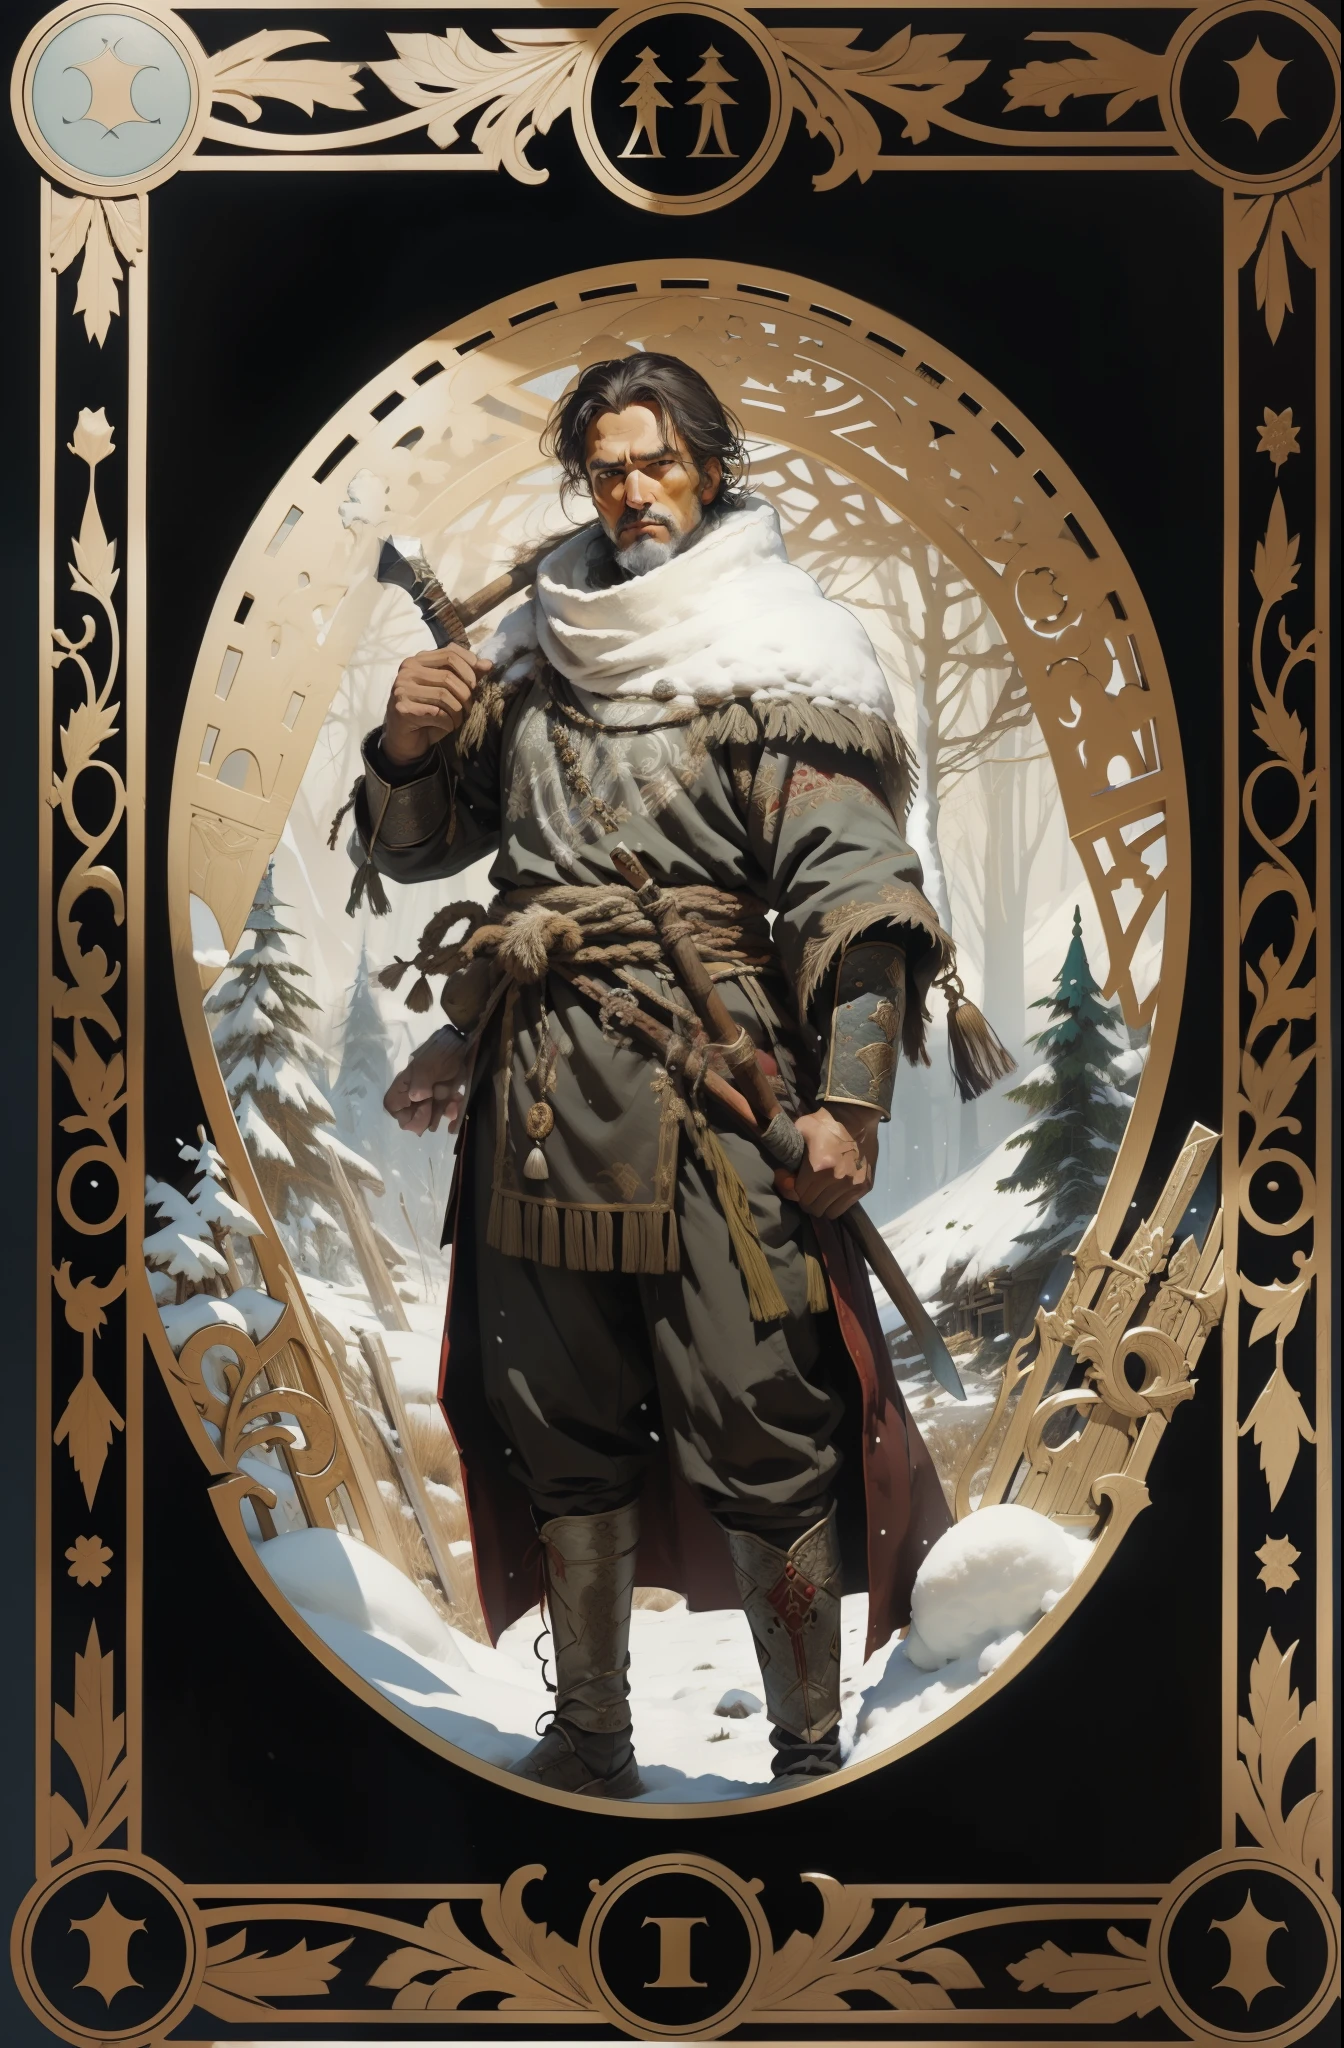 男人, 穿著北方民族的傳統服裝, 手裡拿著斧子, 雪森林背景, 塔羅牌風格, 中世紀圖案框架